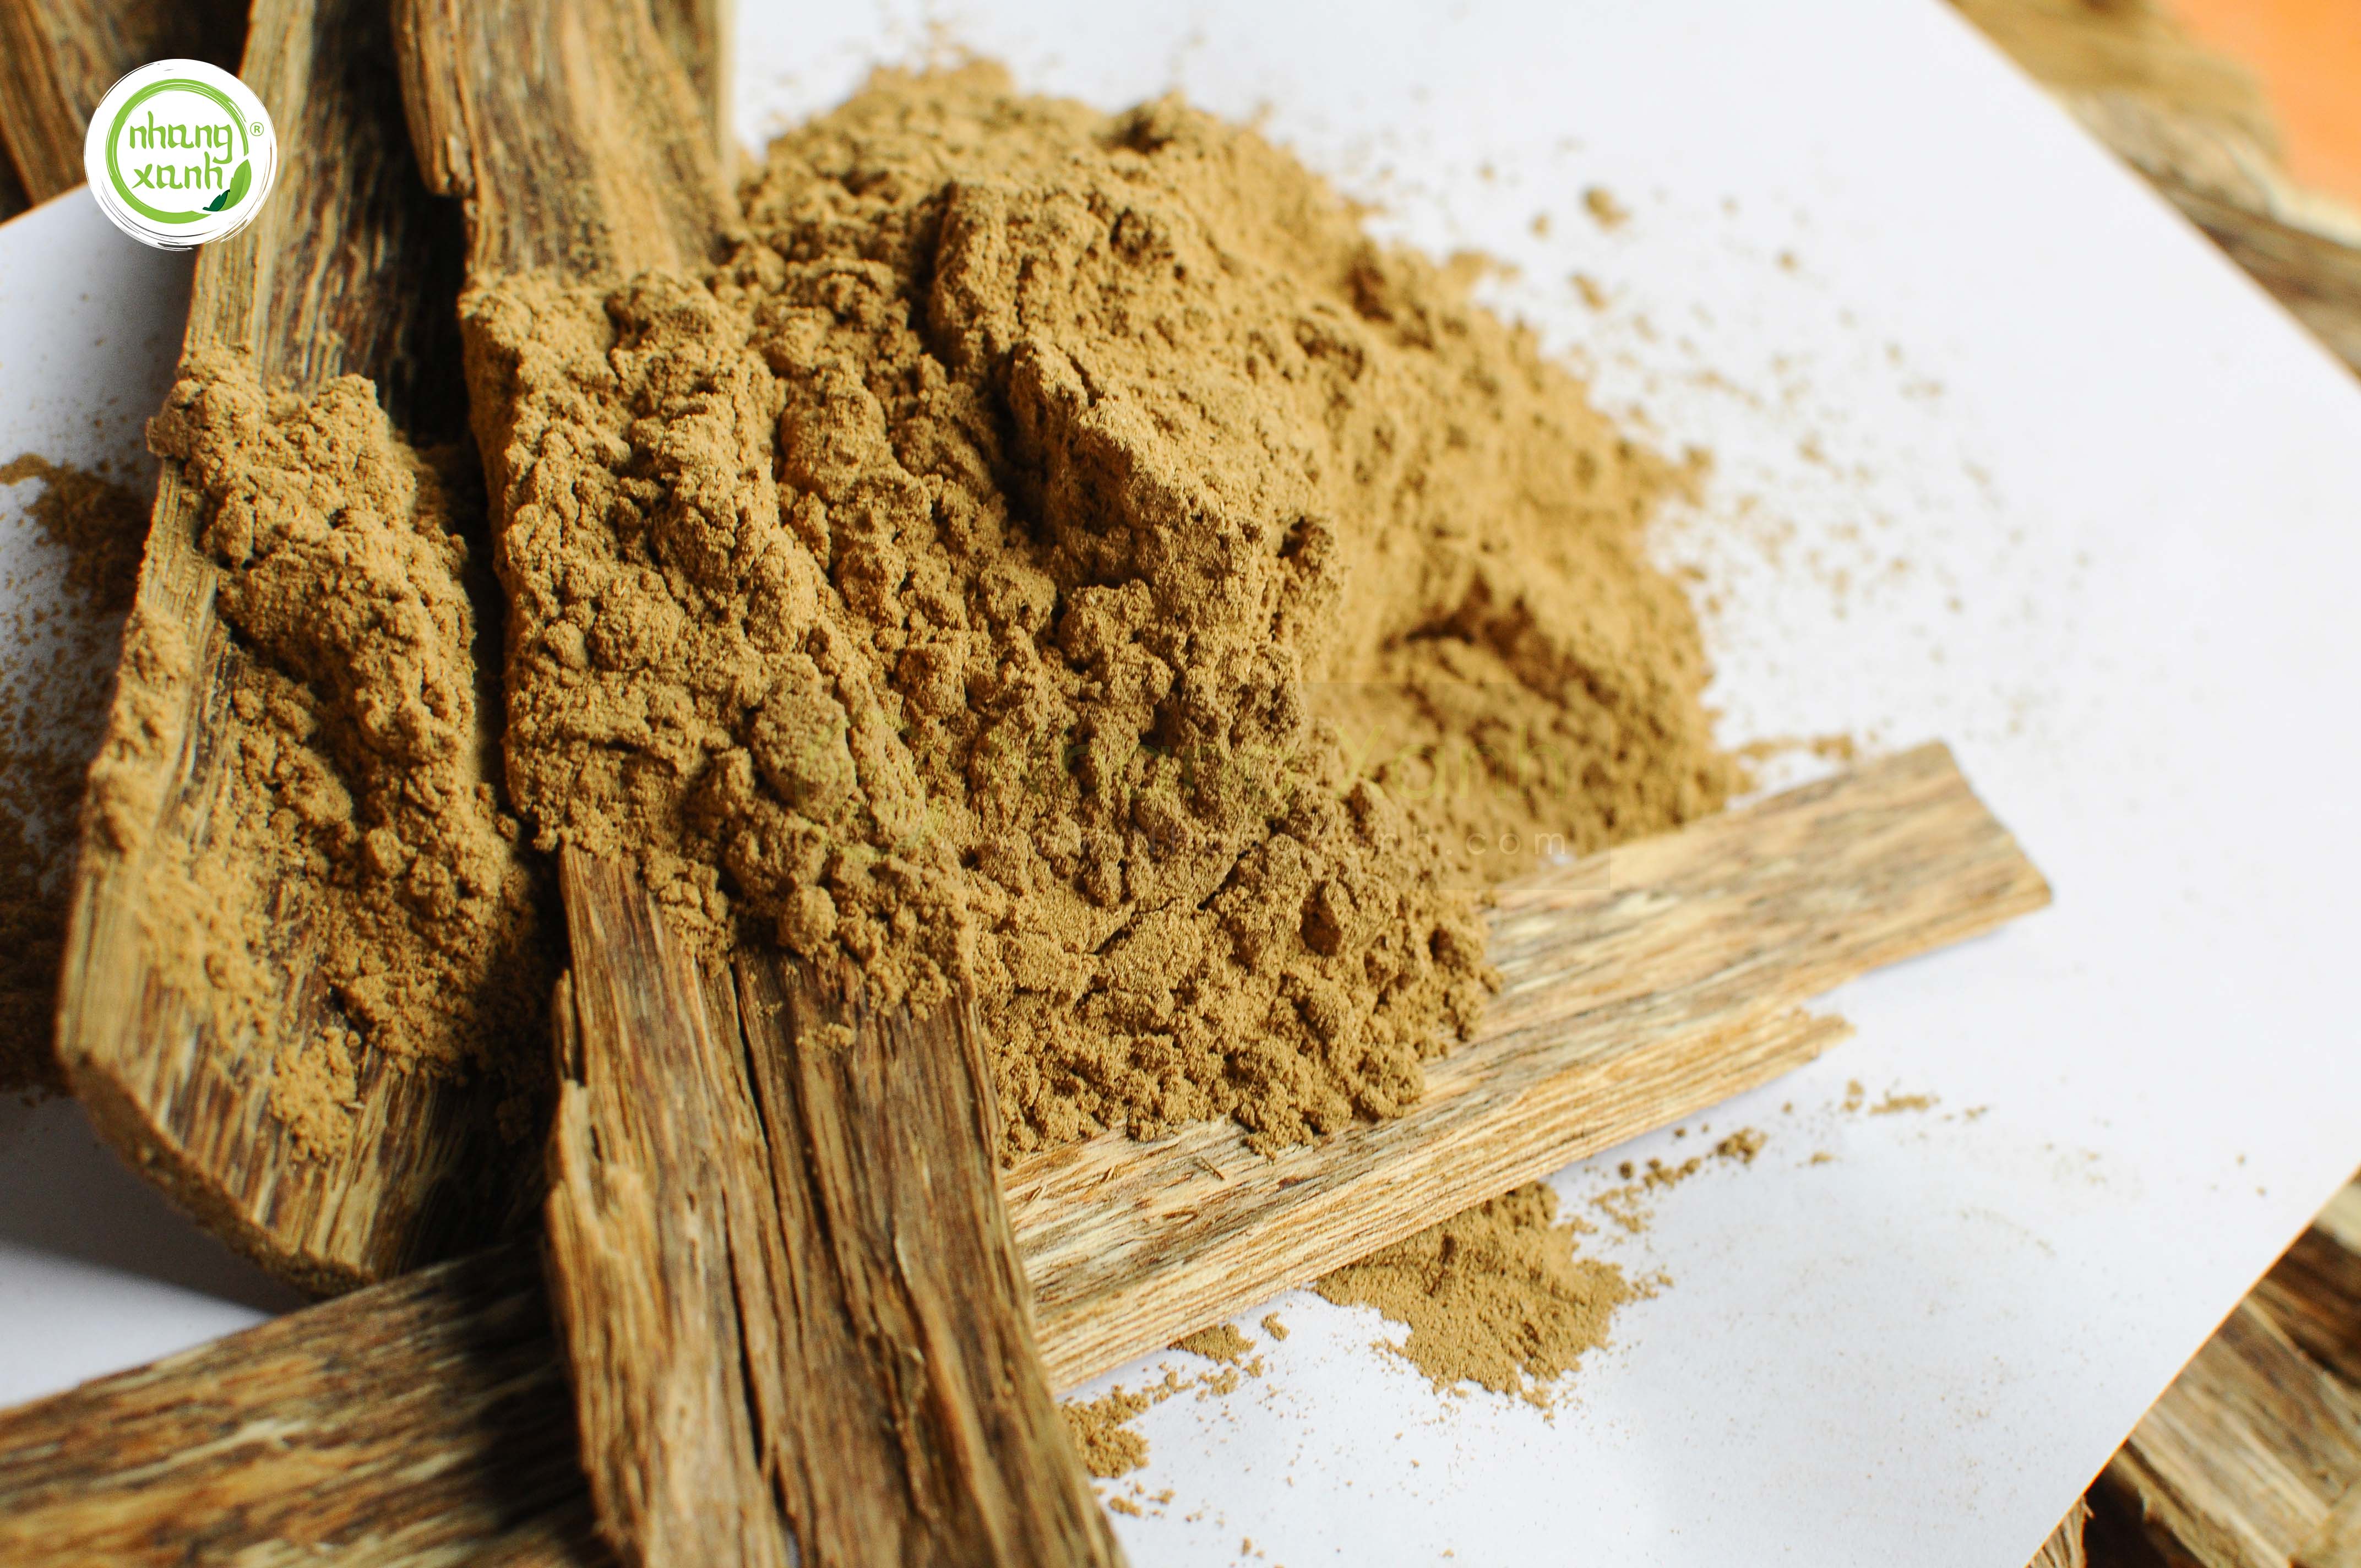 Tìm hiểu về bột trầm hương: Giá bán và cách sử dụng